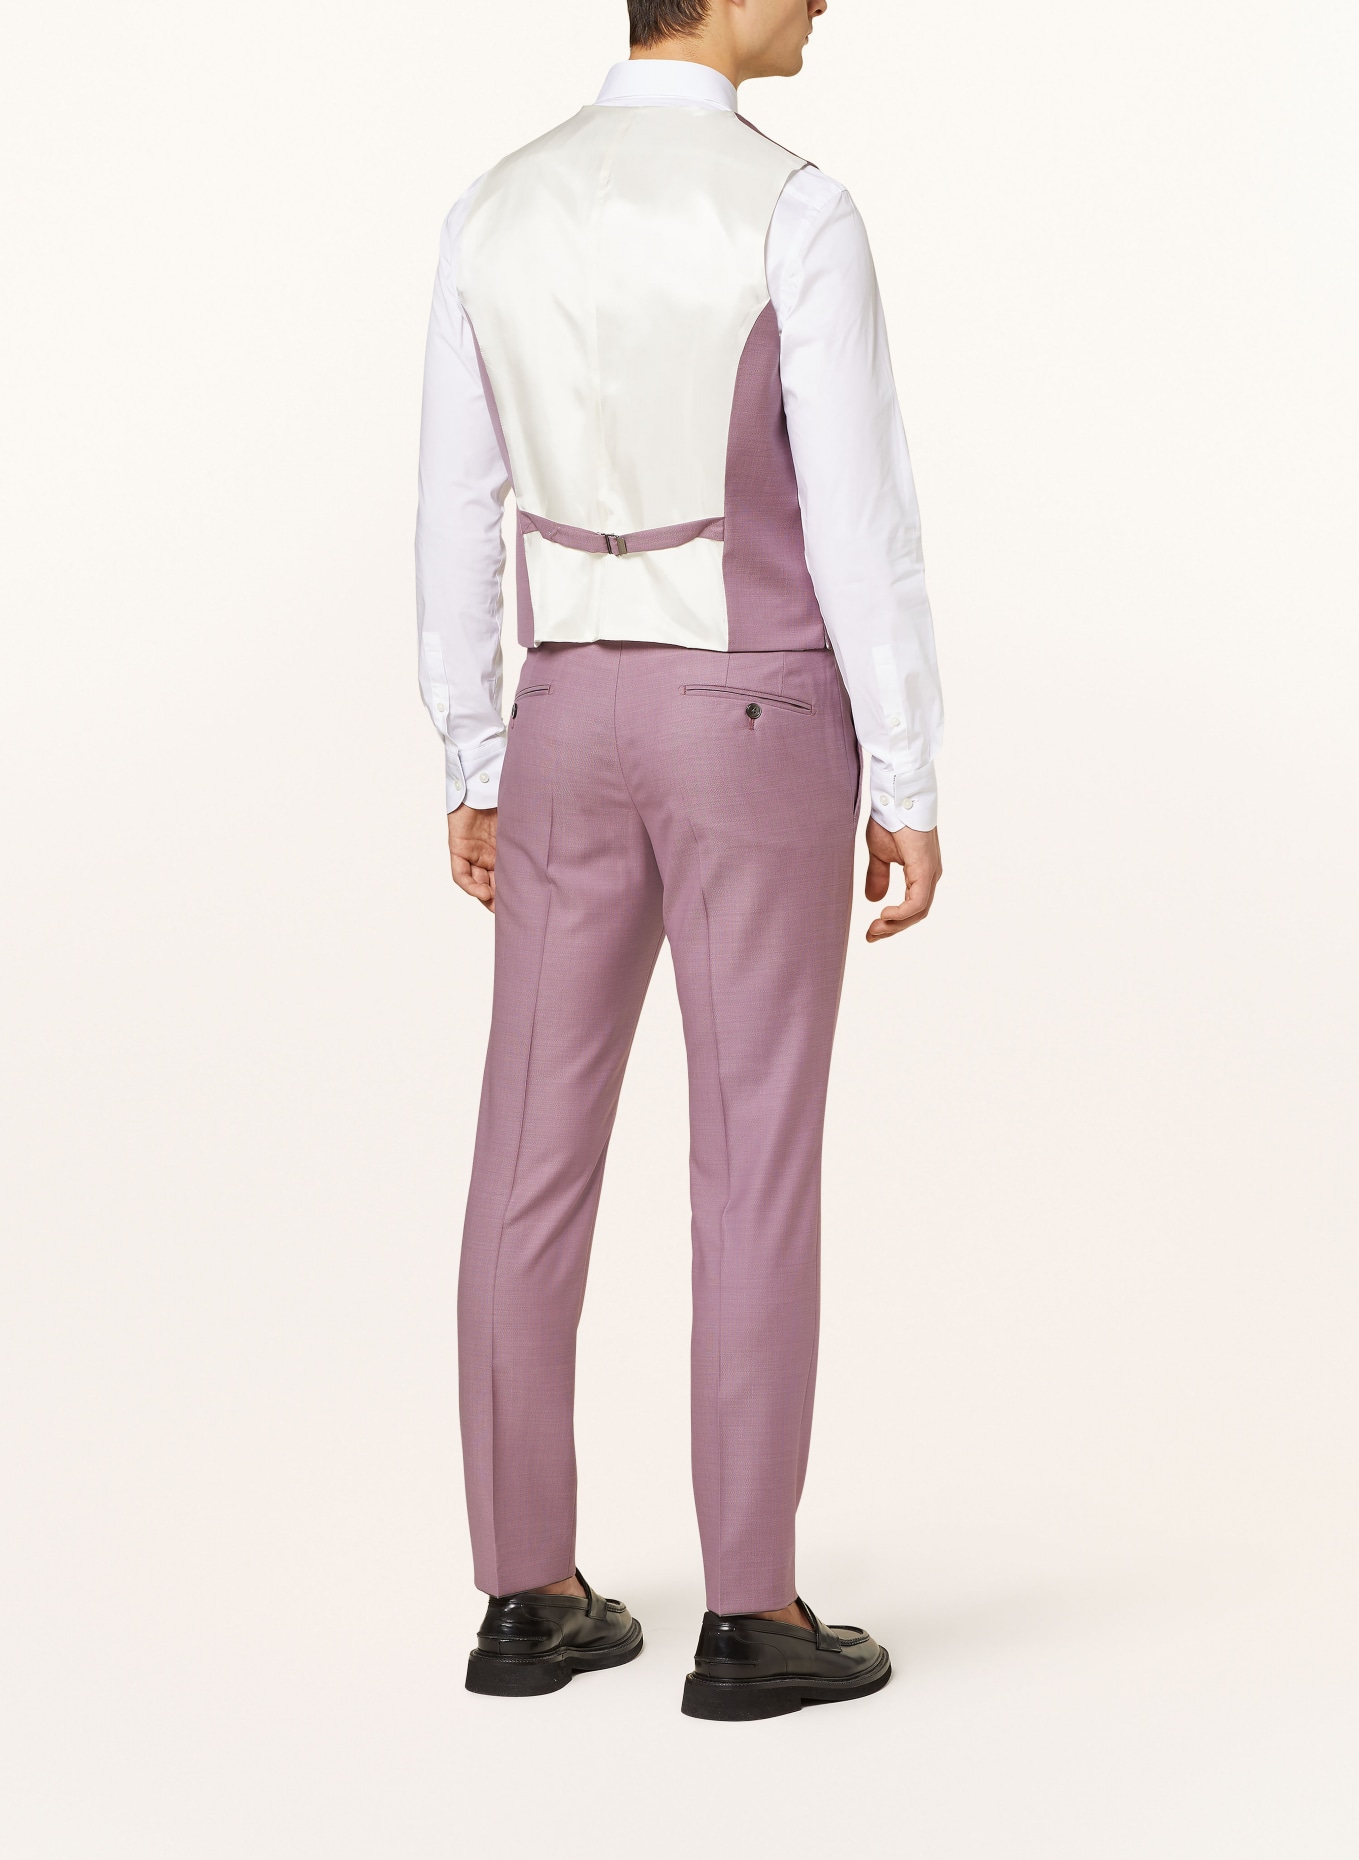 JOOP! Suit vest WEAZER slim fit, Color: 650 Dark Pink                  650 (Image 4)